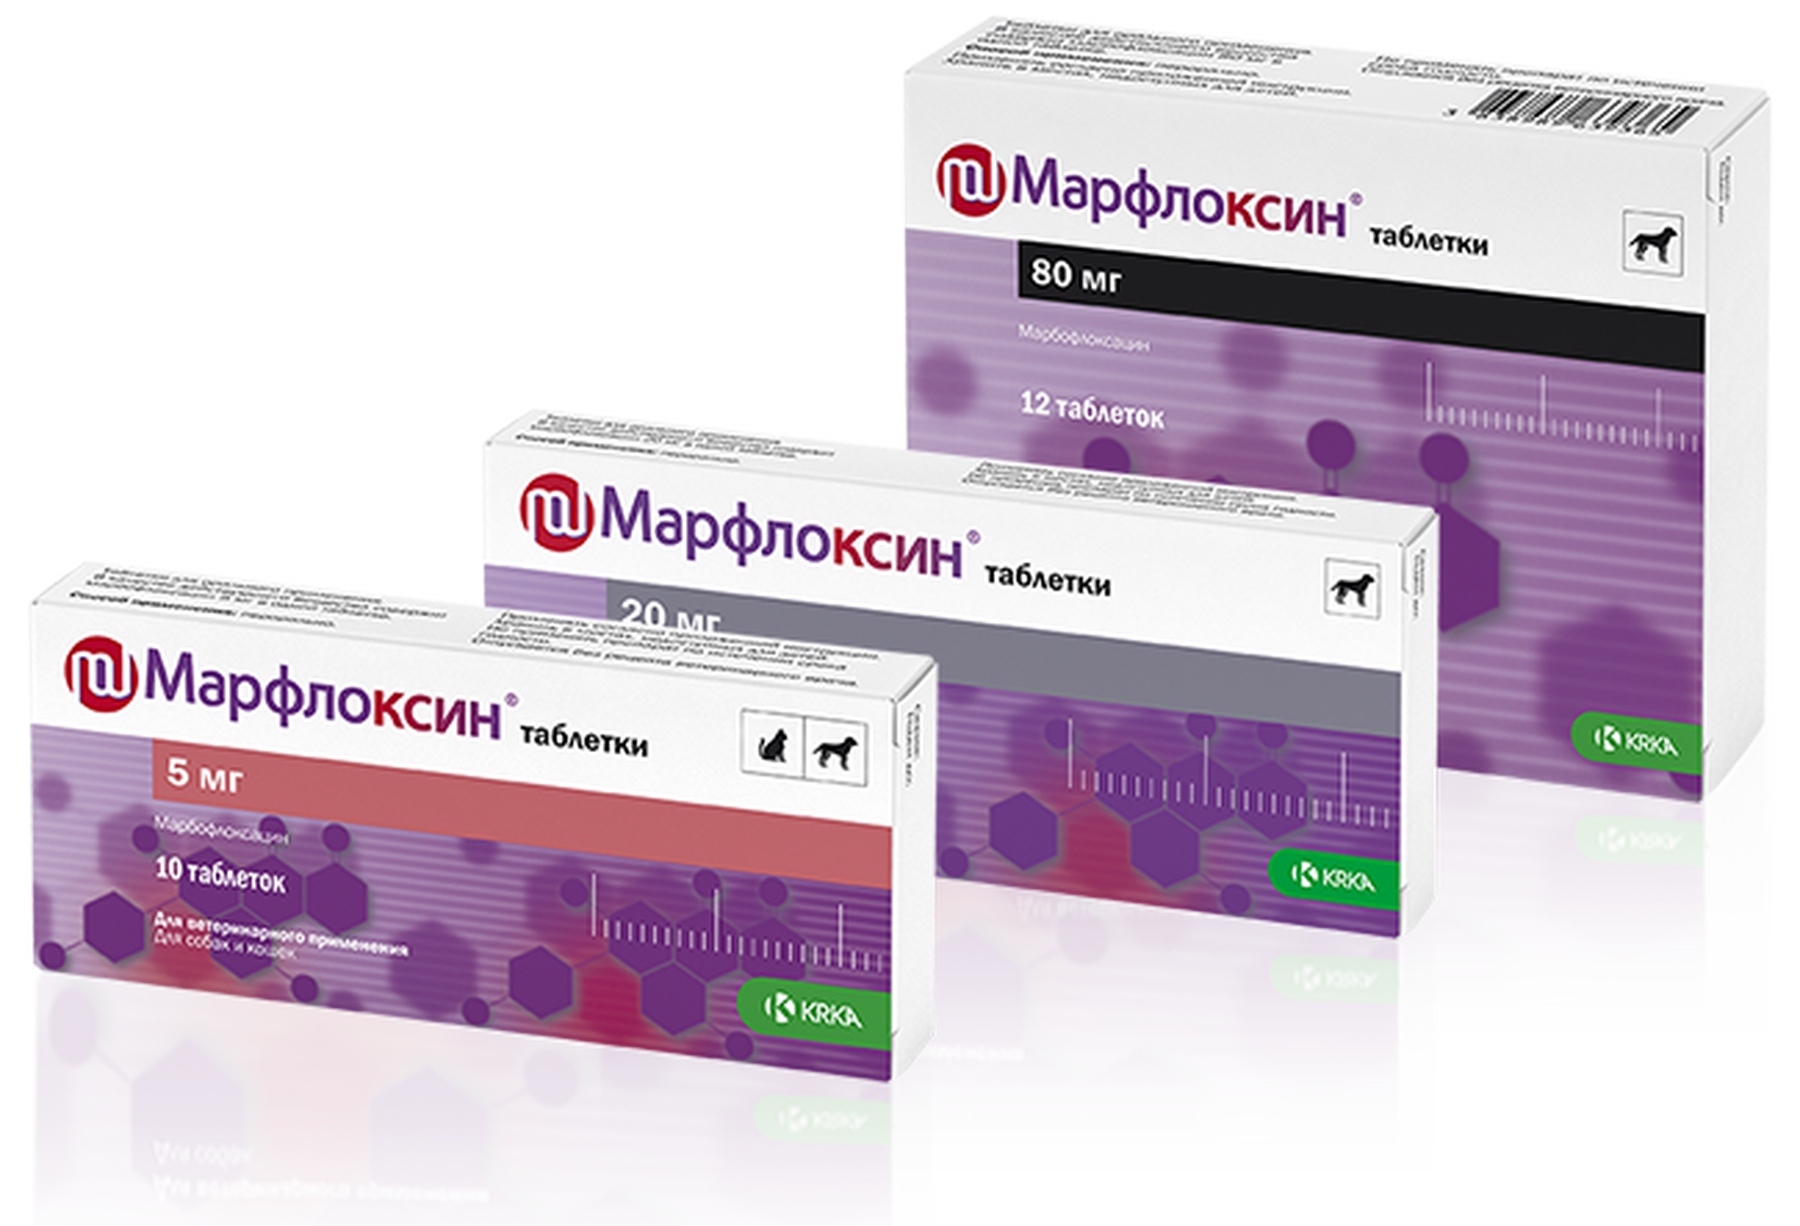 купить Антибактериальный препарат для собак Марфлоксин с бесплатной доставкой в Калининграде